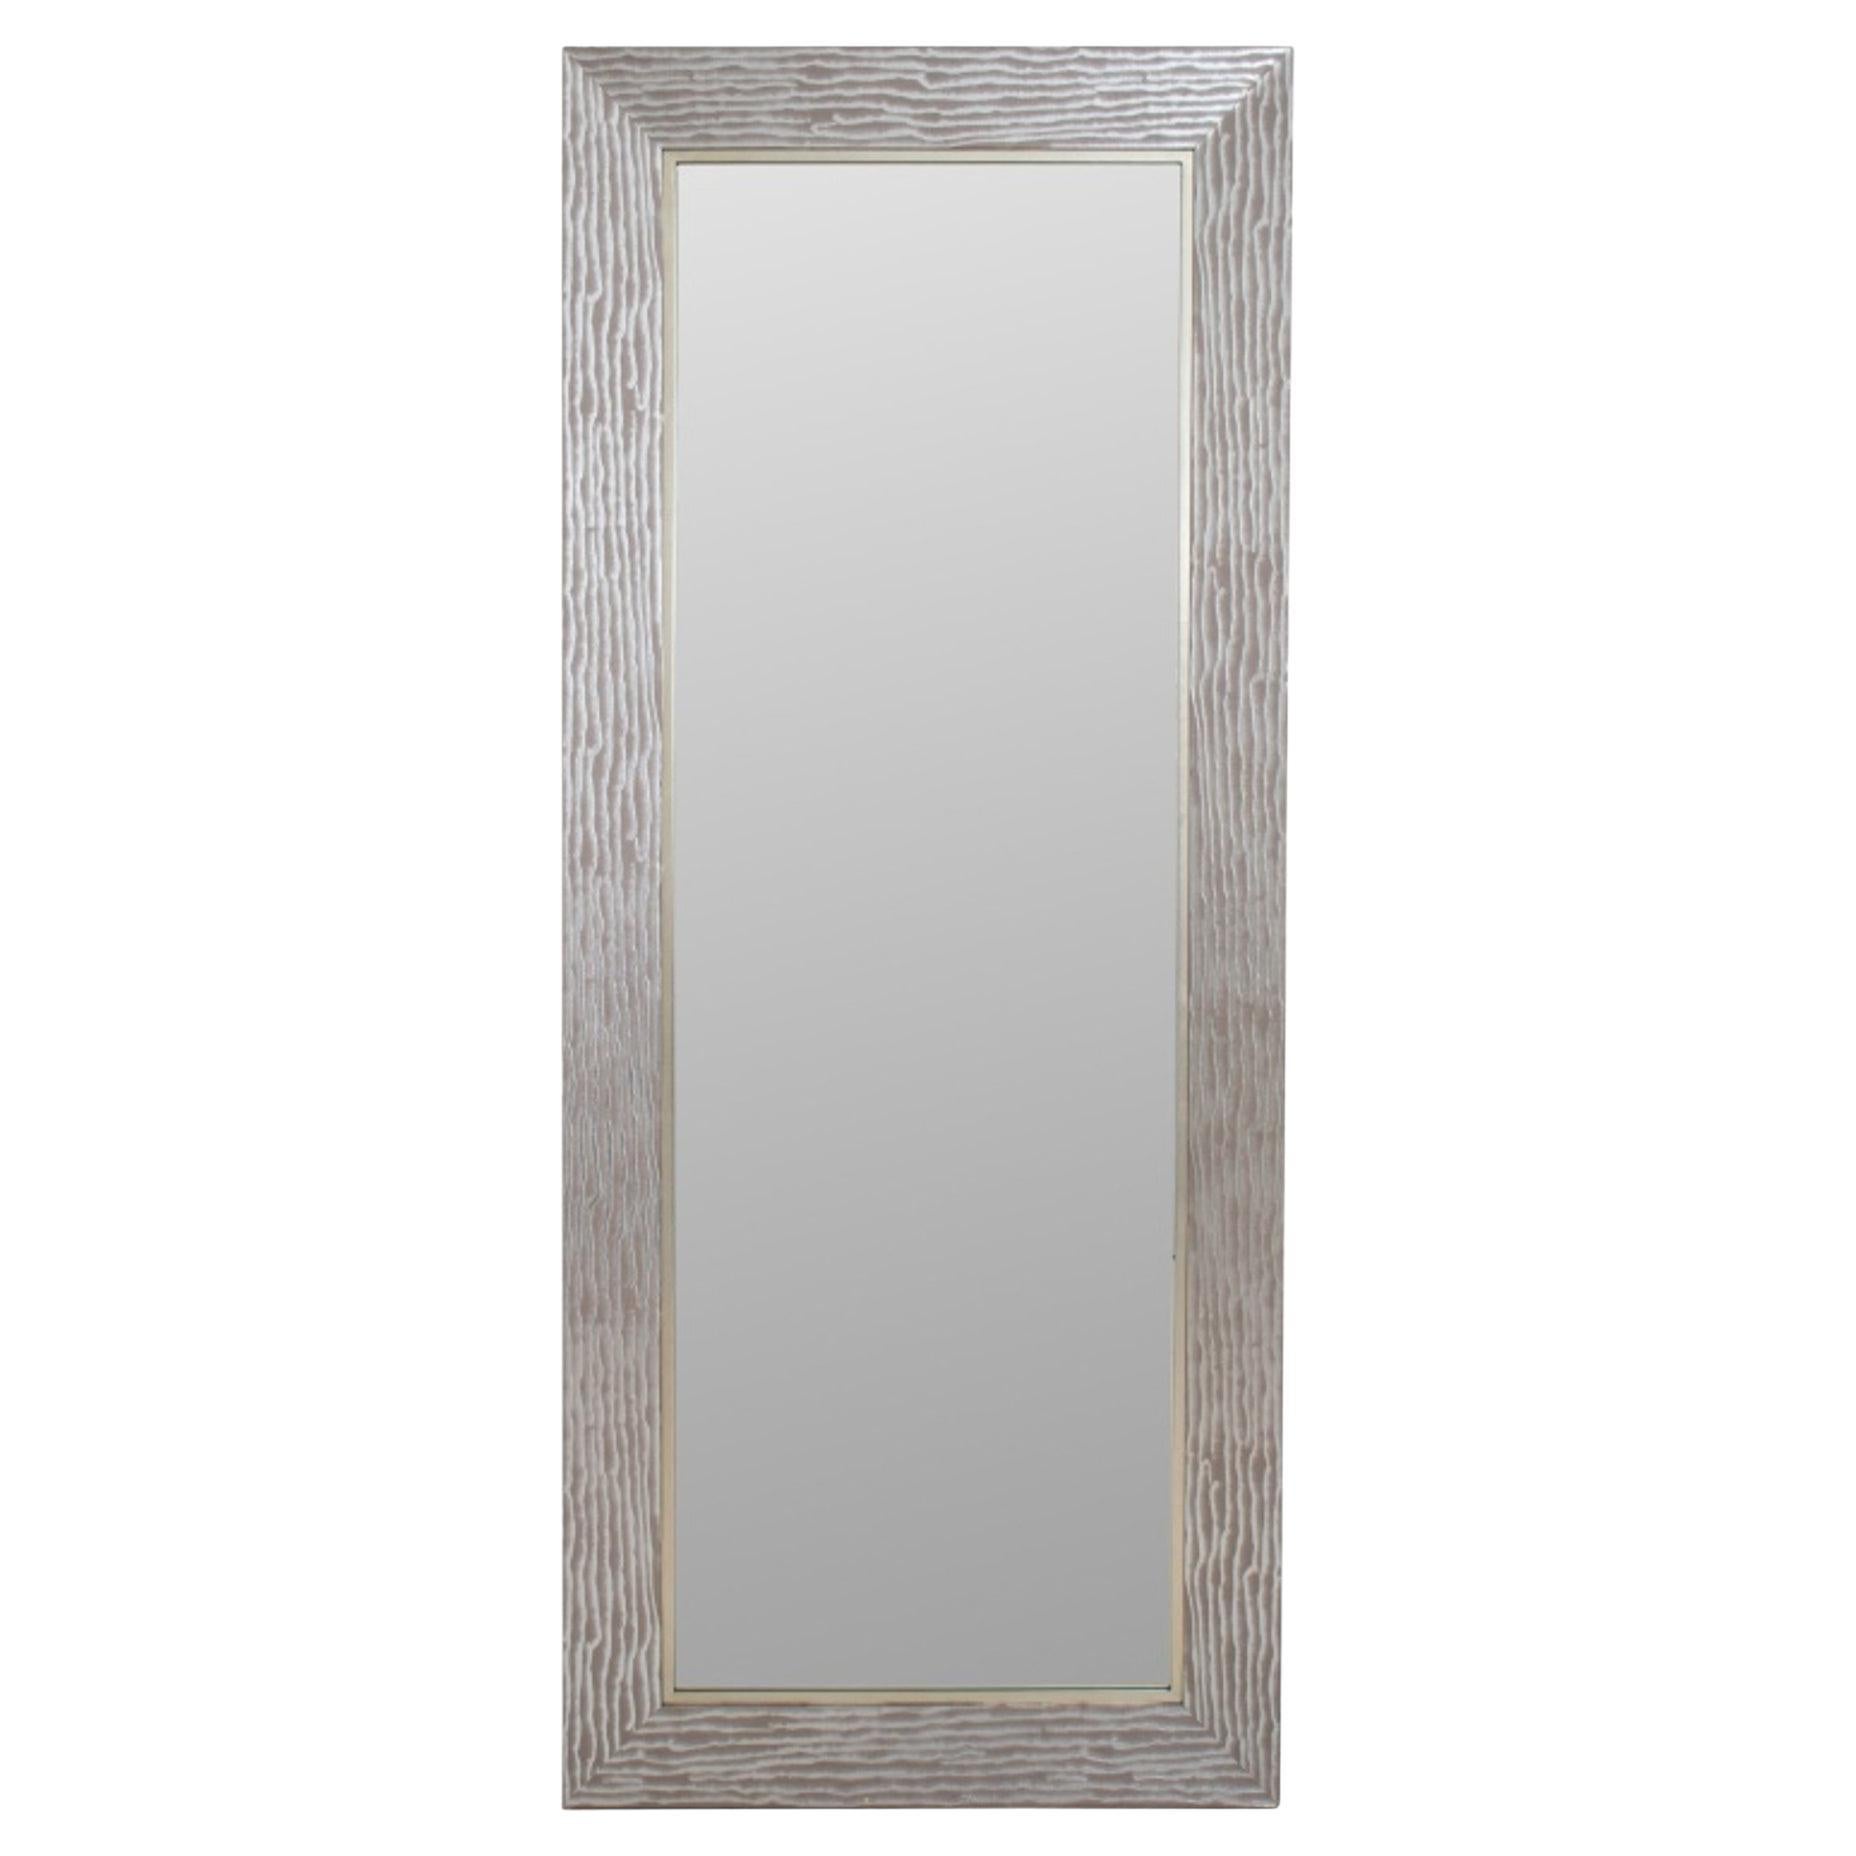 Grand miroir en bois argenté allongé Uttermost en vente